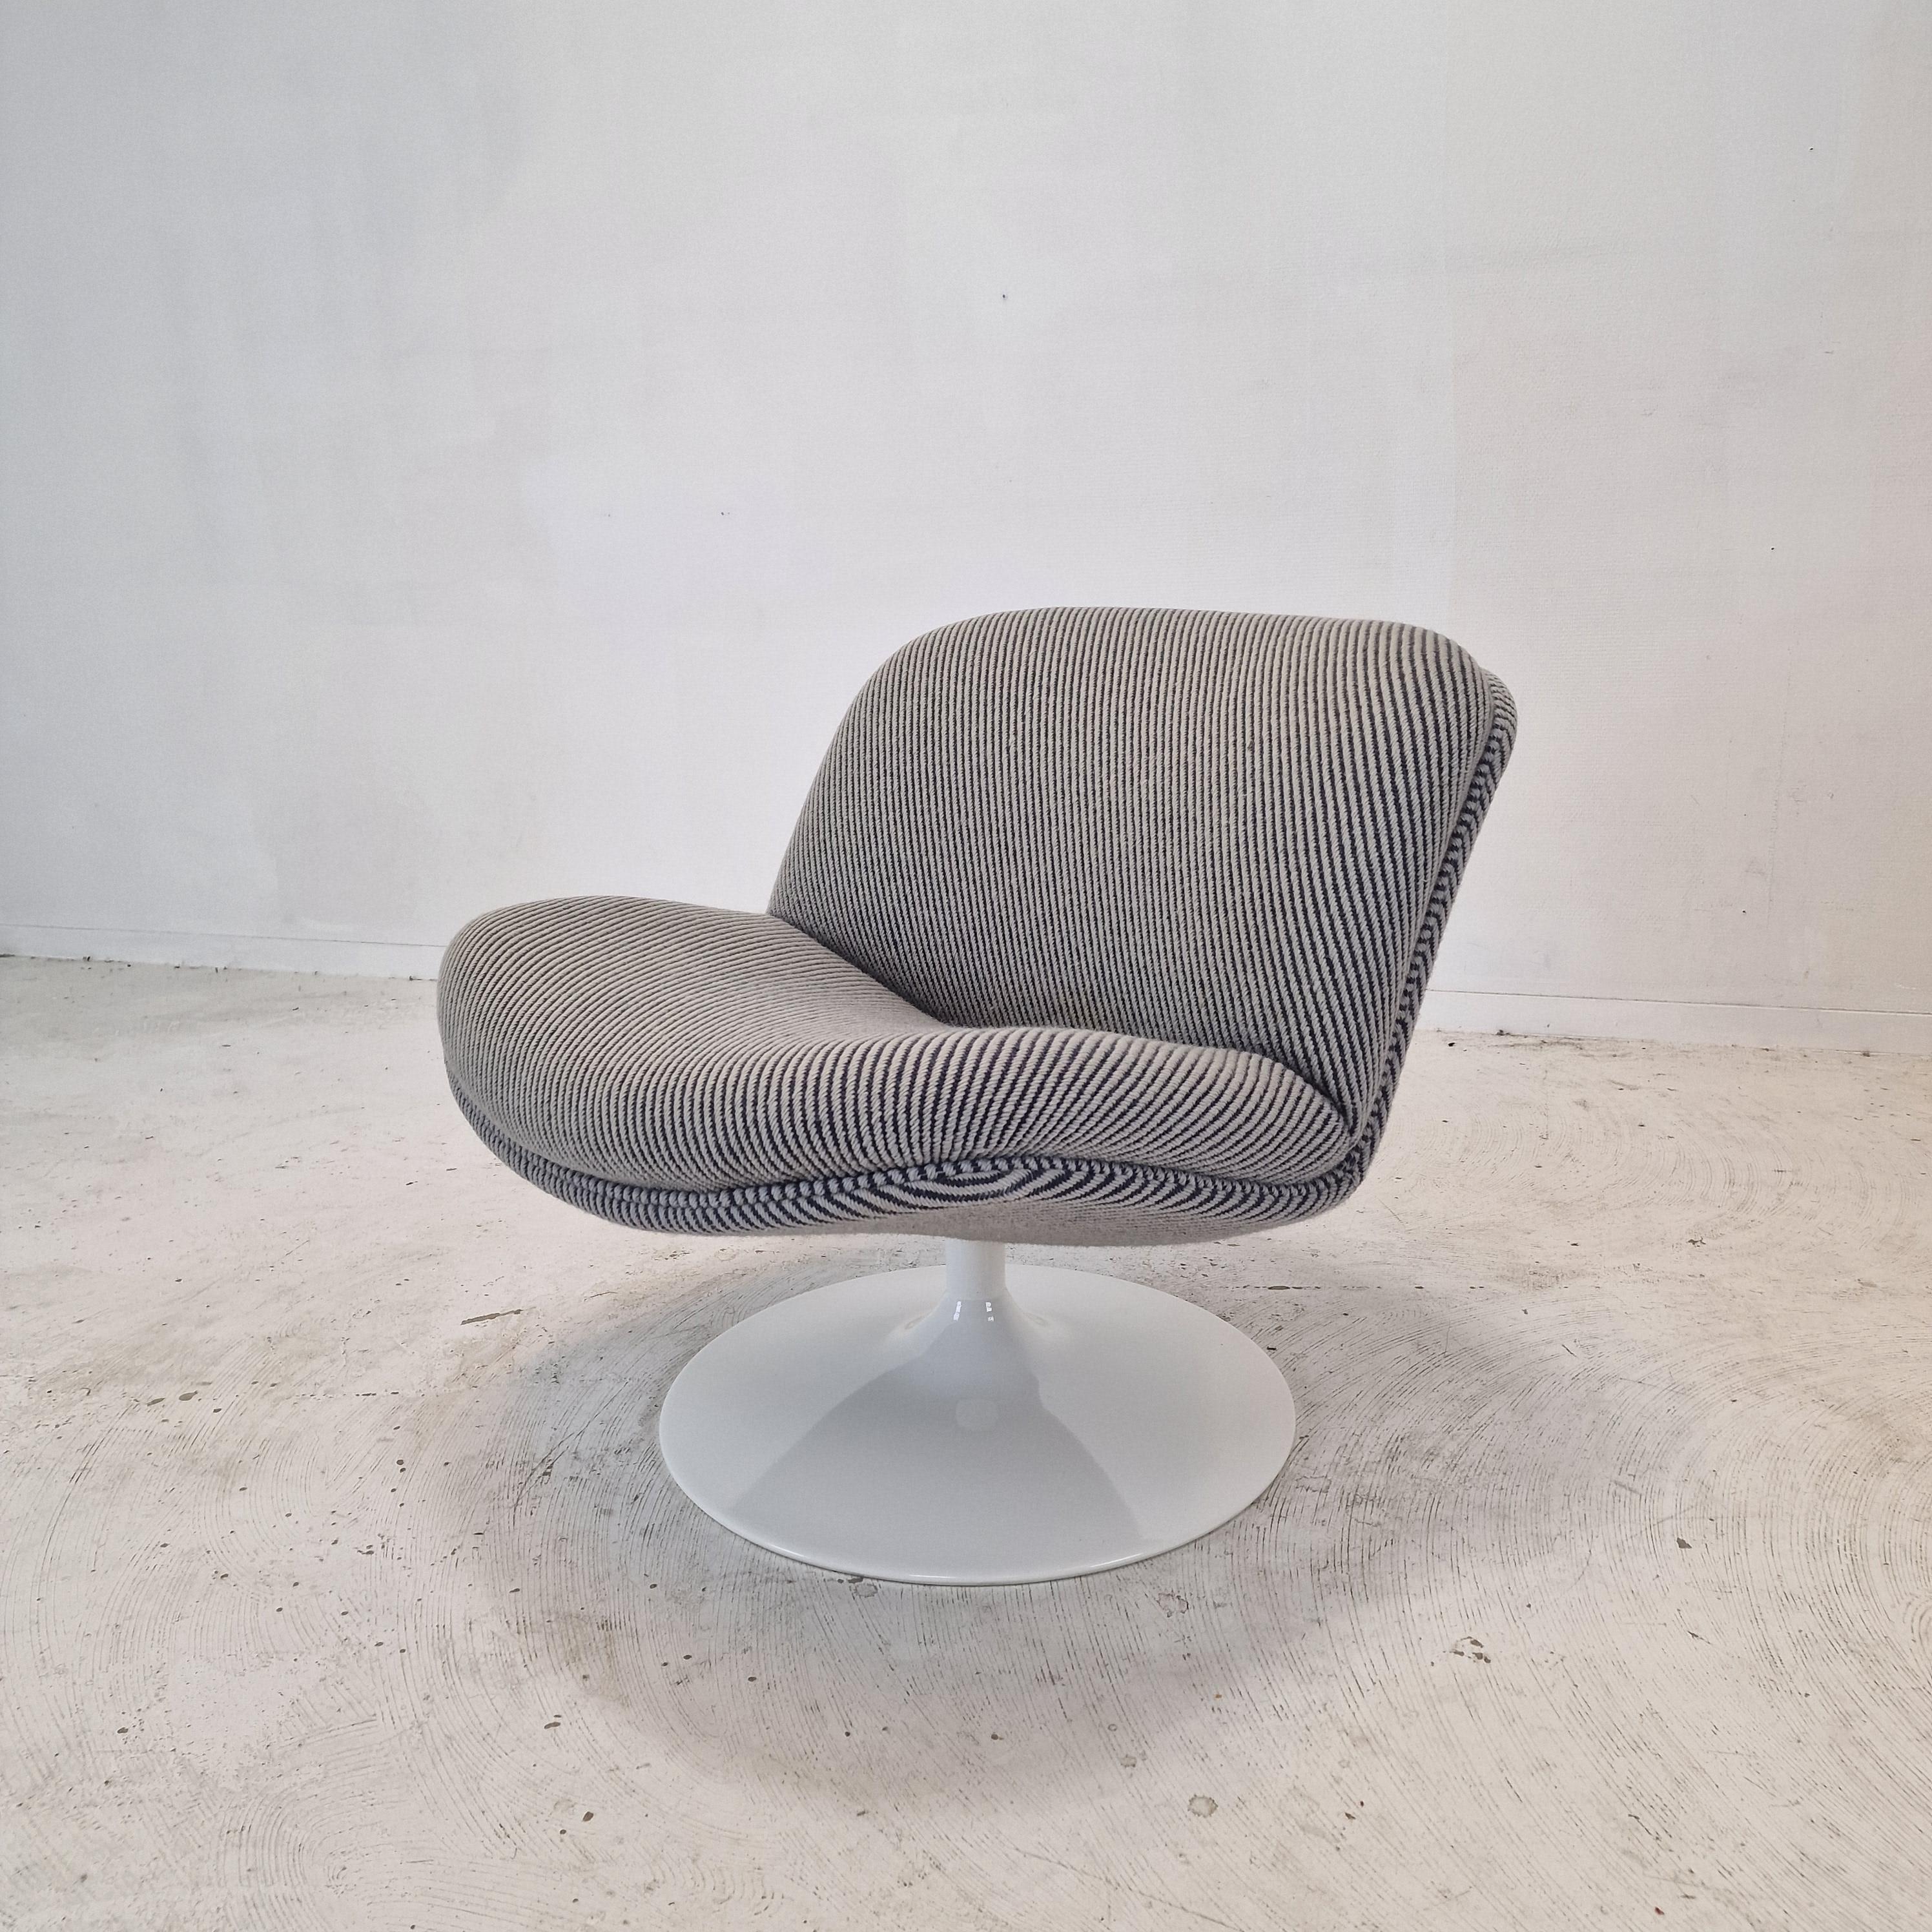 Sehr hübscher und bequemer 508 Lounge Chair, entworfen von dem berühmten Geoffrey Harcourt für Artifort in den 70er Jahren.

Sehr stabiler Holzrahmen mit einem großen drehbaren Metallfuß.  
Der Stuhl ist mit dem originalen, hochwertigen Wollstoff